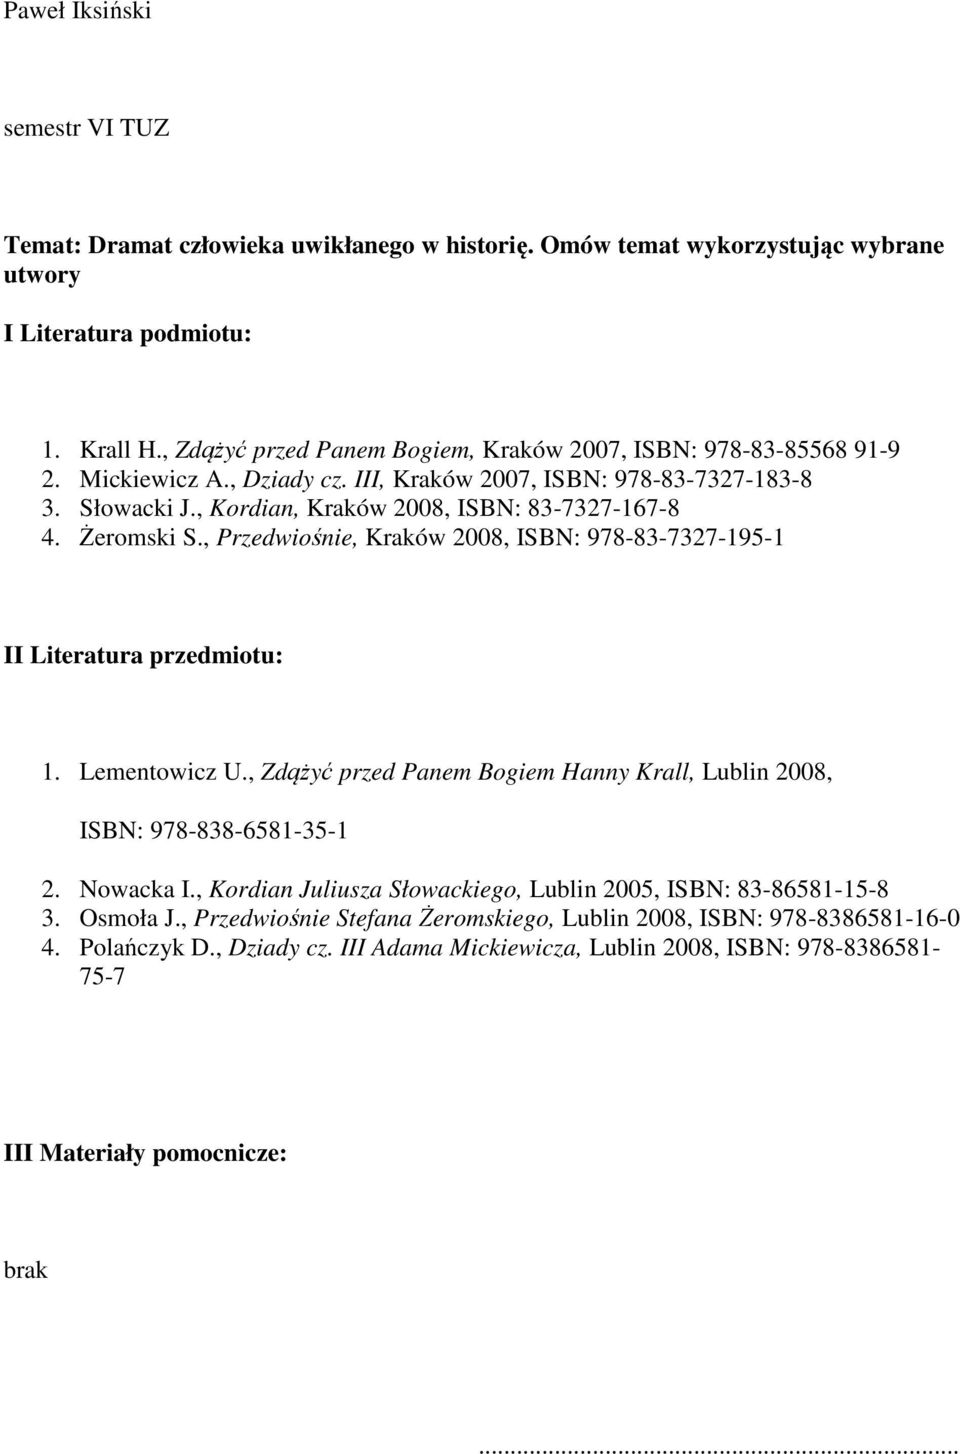 Żeromski S., Przedwiośnie, Kraków 2008, ISBN: 978-83-7327-195-1 II Literatura przedmiotu: 1. Lementowicz U., Zdążyć przed Panem Bogiem Hanny Krall, Lublin 2008, ISBN: 978-838-6581-35-1 2. Nowacka I.